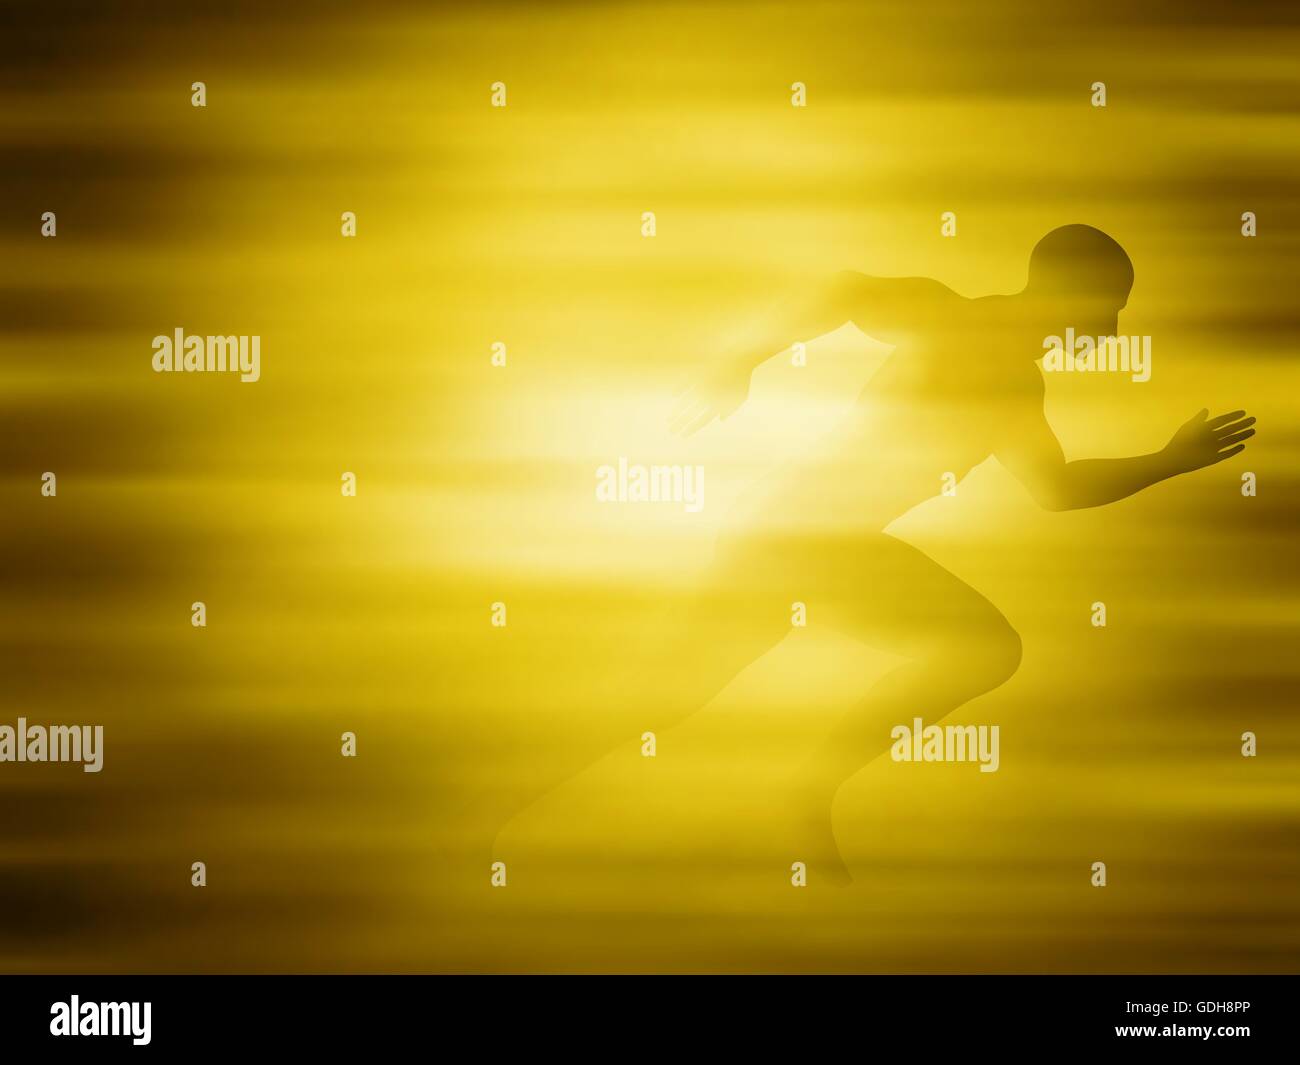 Bearbeitbares Vektor-Illustration eines Mannes sprinten in einer goldenen Unschärfe mit Farbverlauf Netze erstellt Stock Vektor